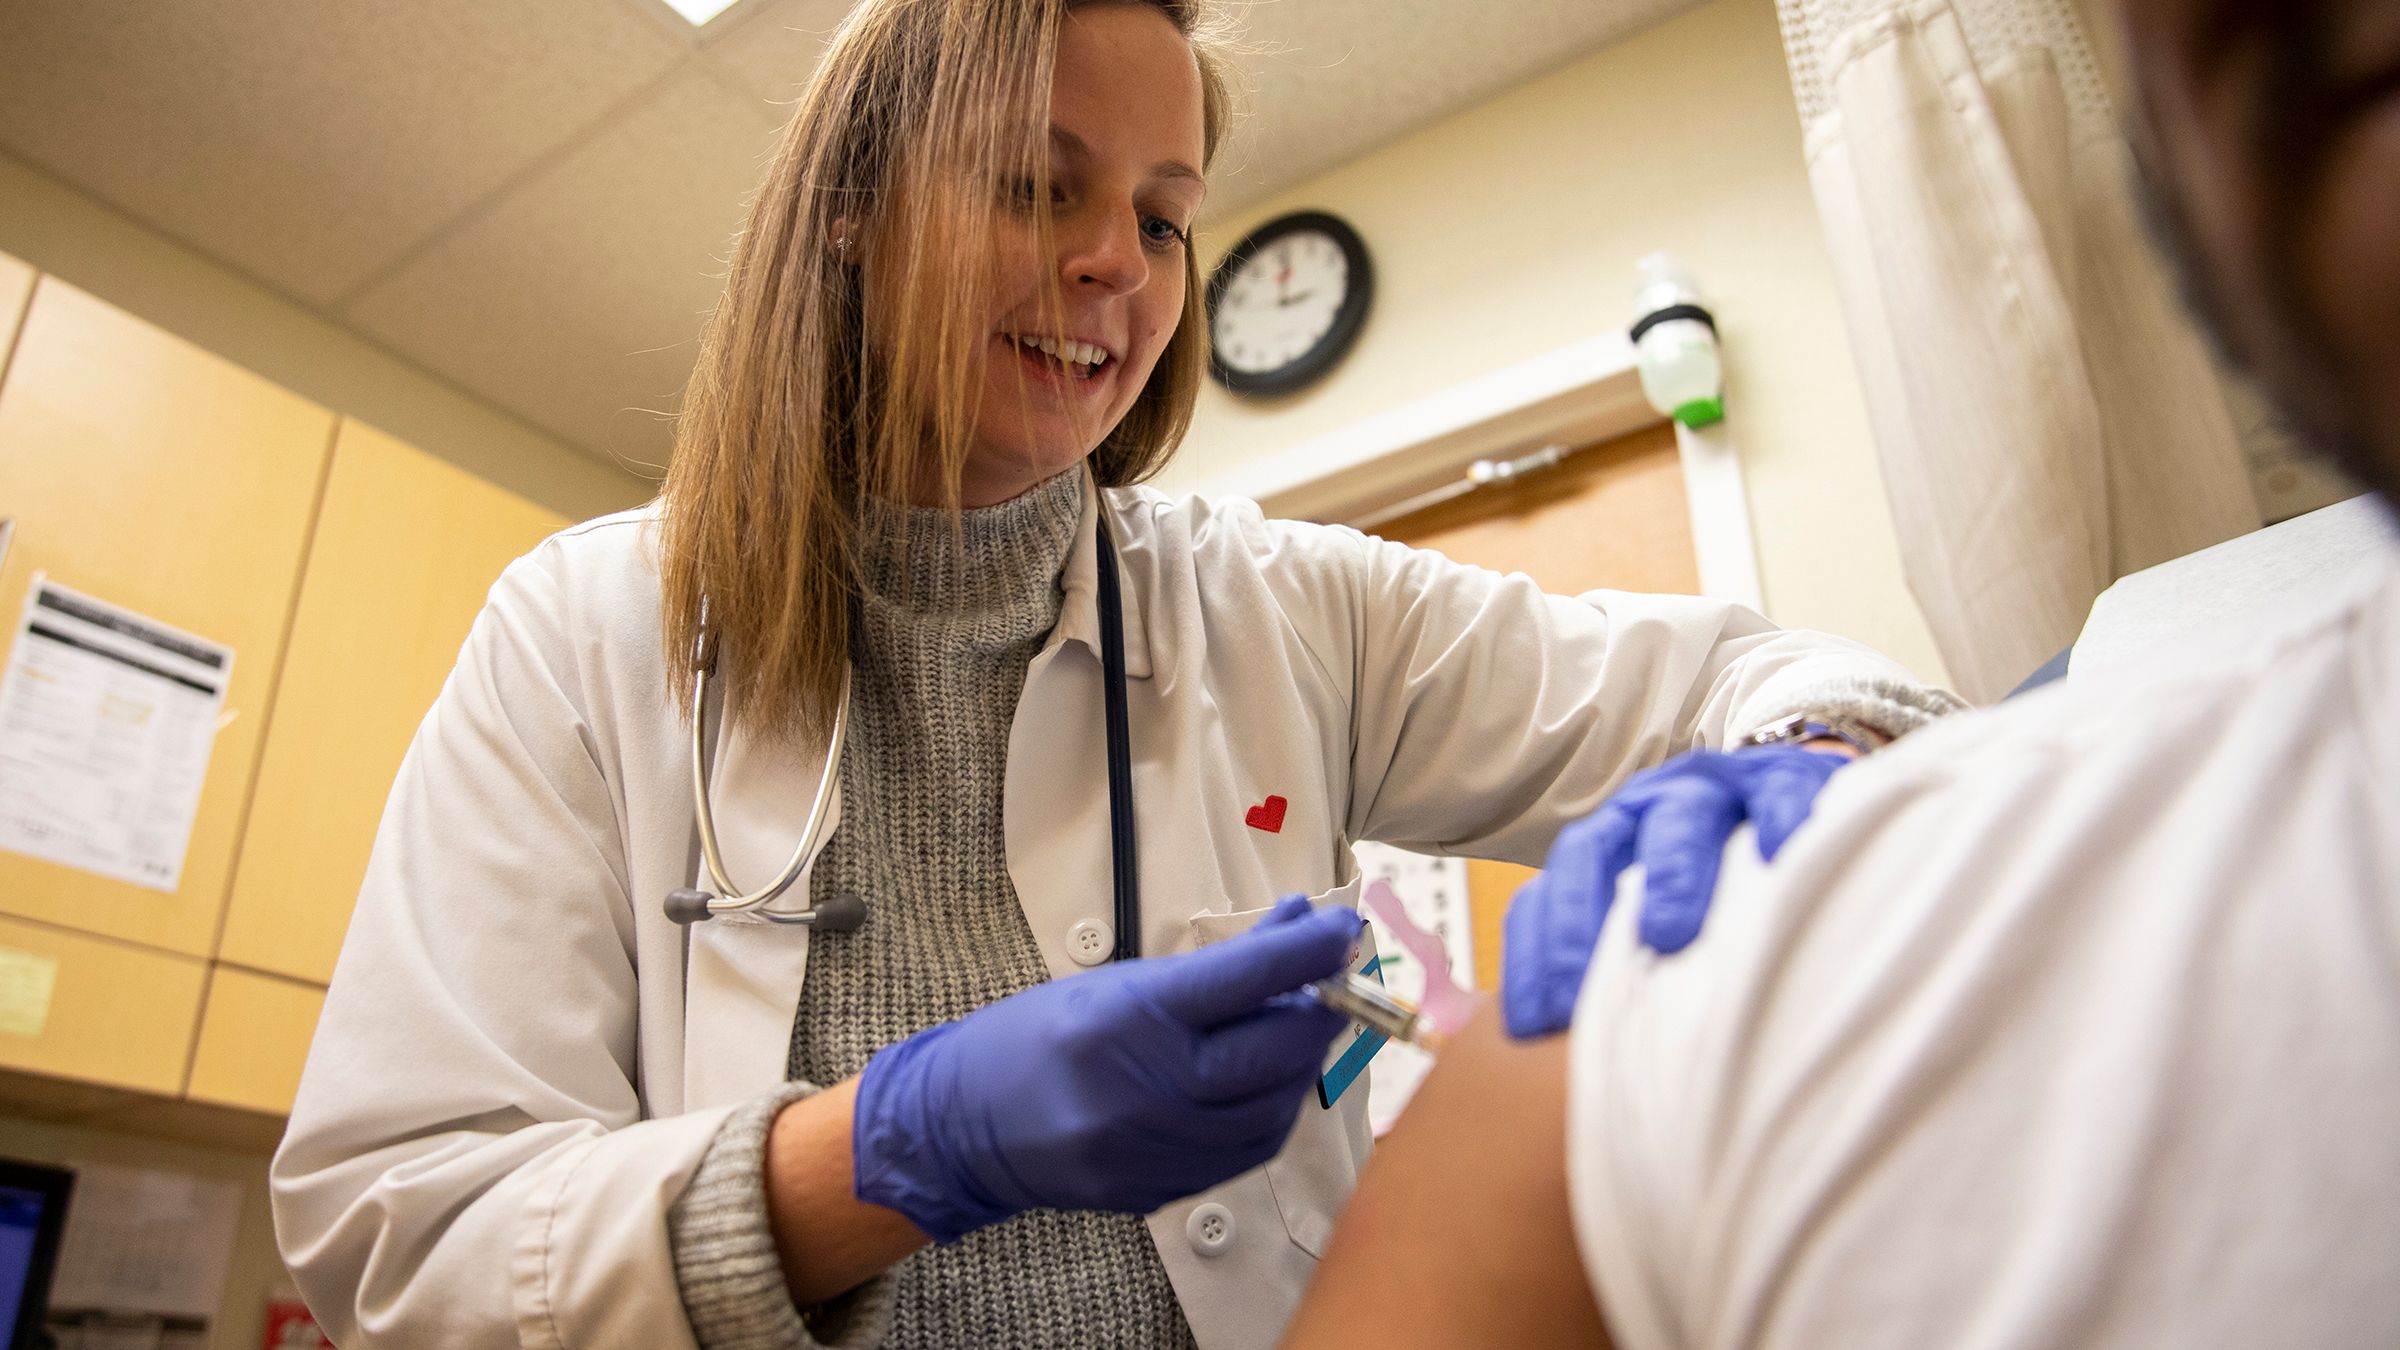 Expertos: Aparte de COVID, no olvidar vacuna contra gripe